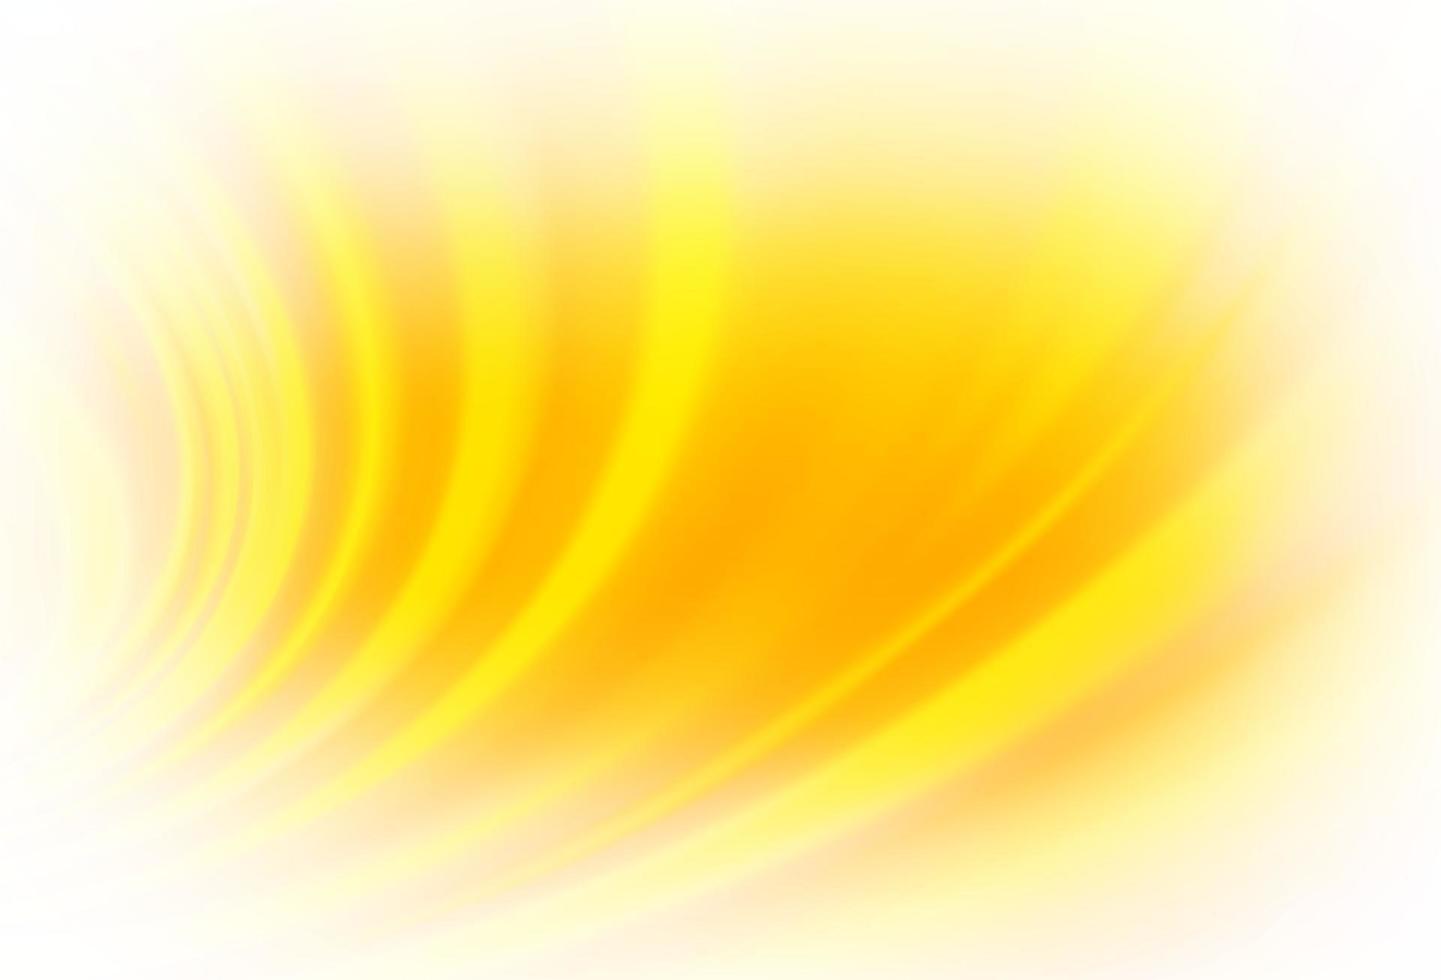 ljus gul, orange vektor mönster med lampa former.